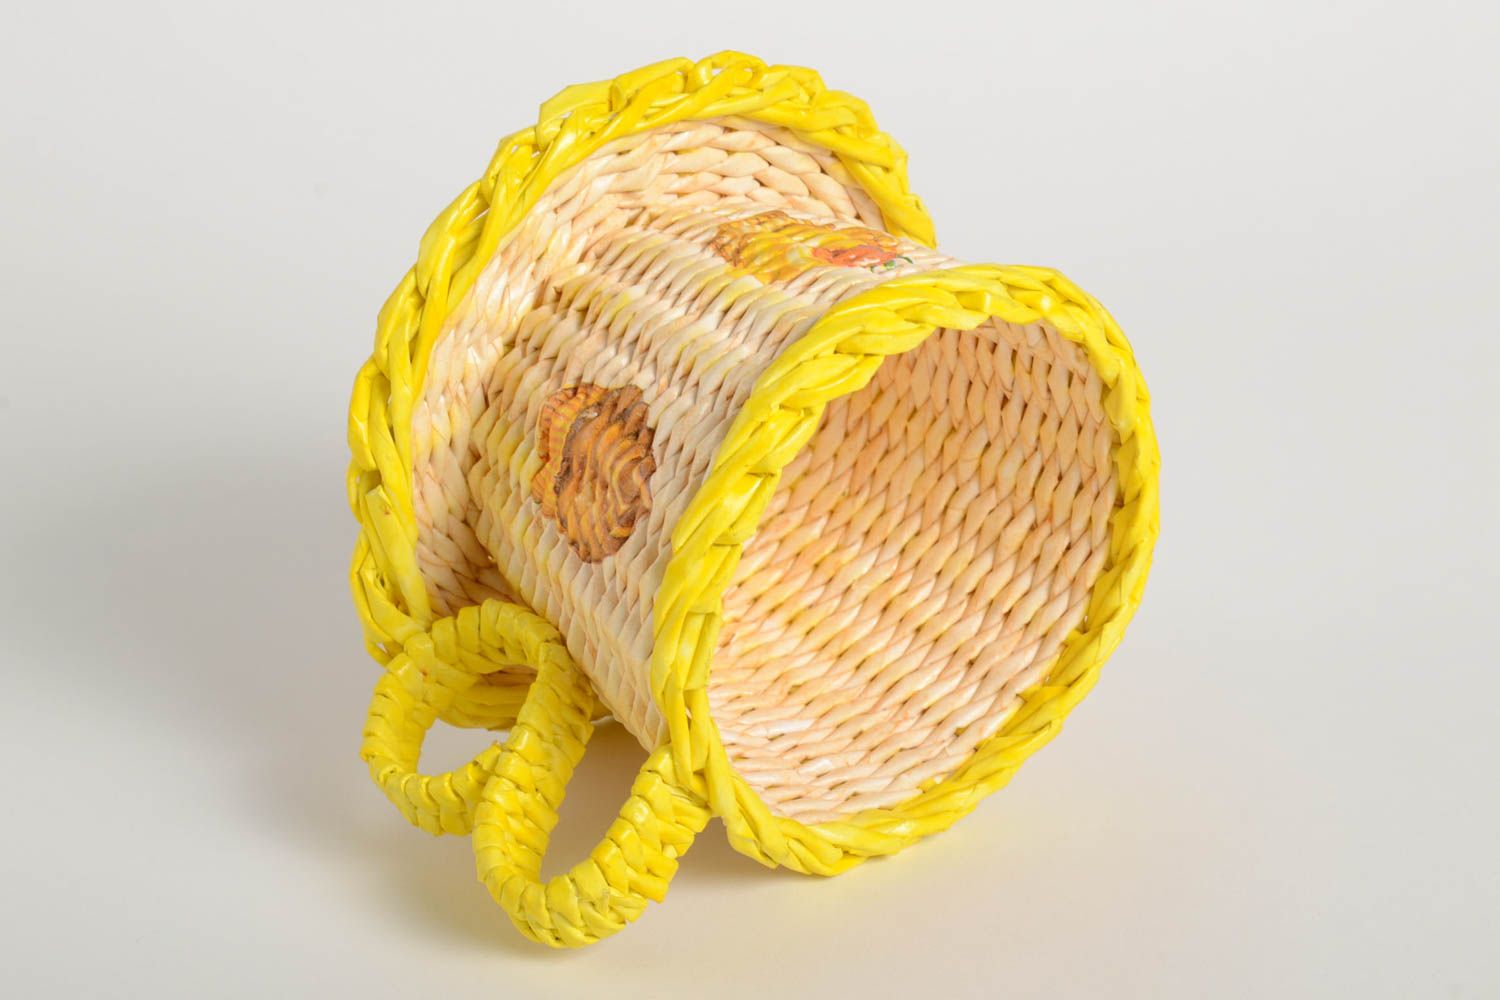 Handmade woven paper basket woven paper box design newspaper craft gift ideas photo 4